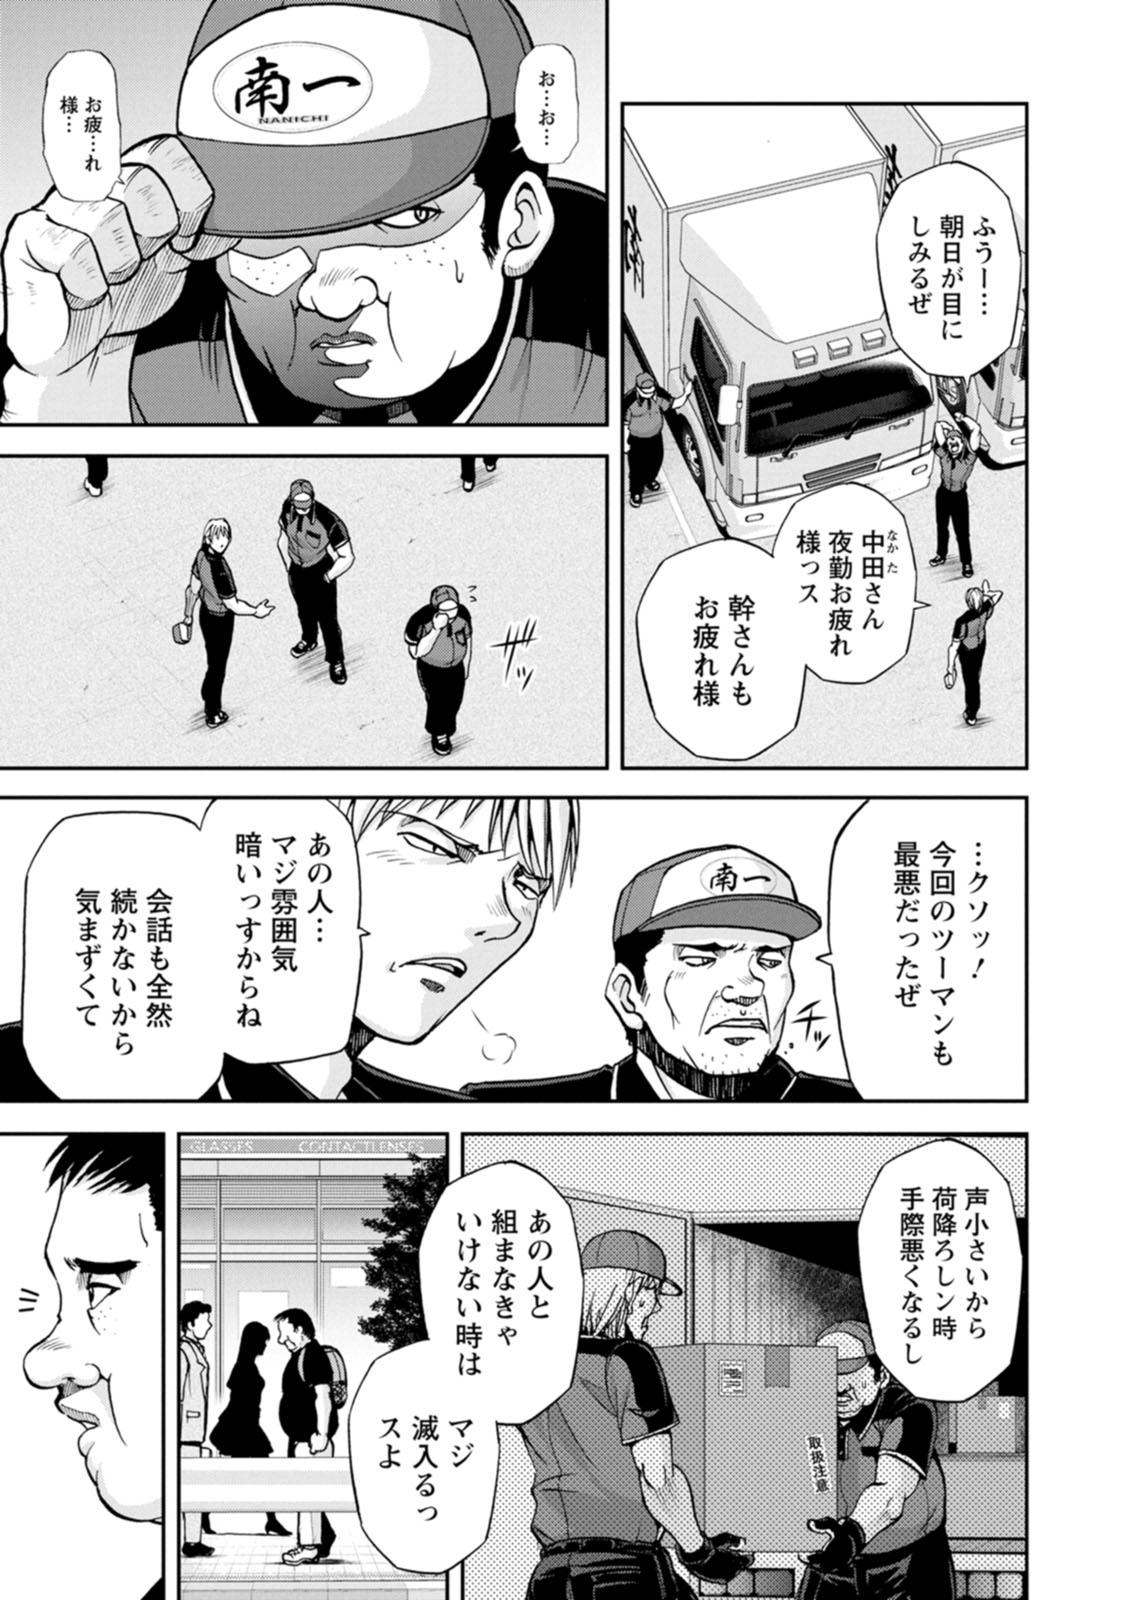 Comendo Mr. Taitani from Corpo Harai - Original Shemales - Page 3